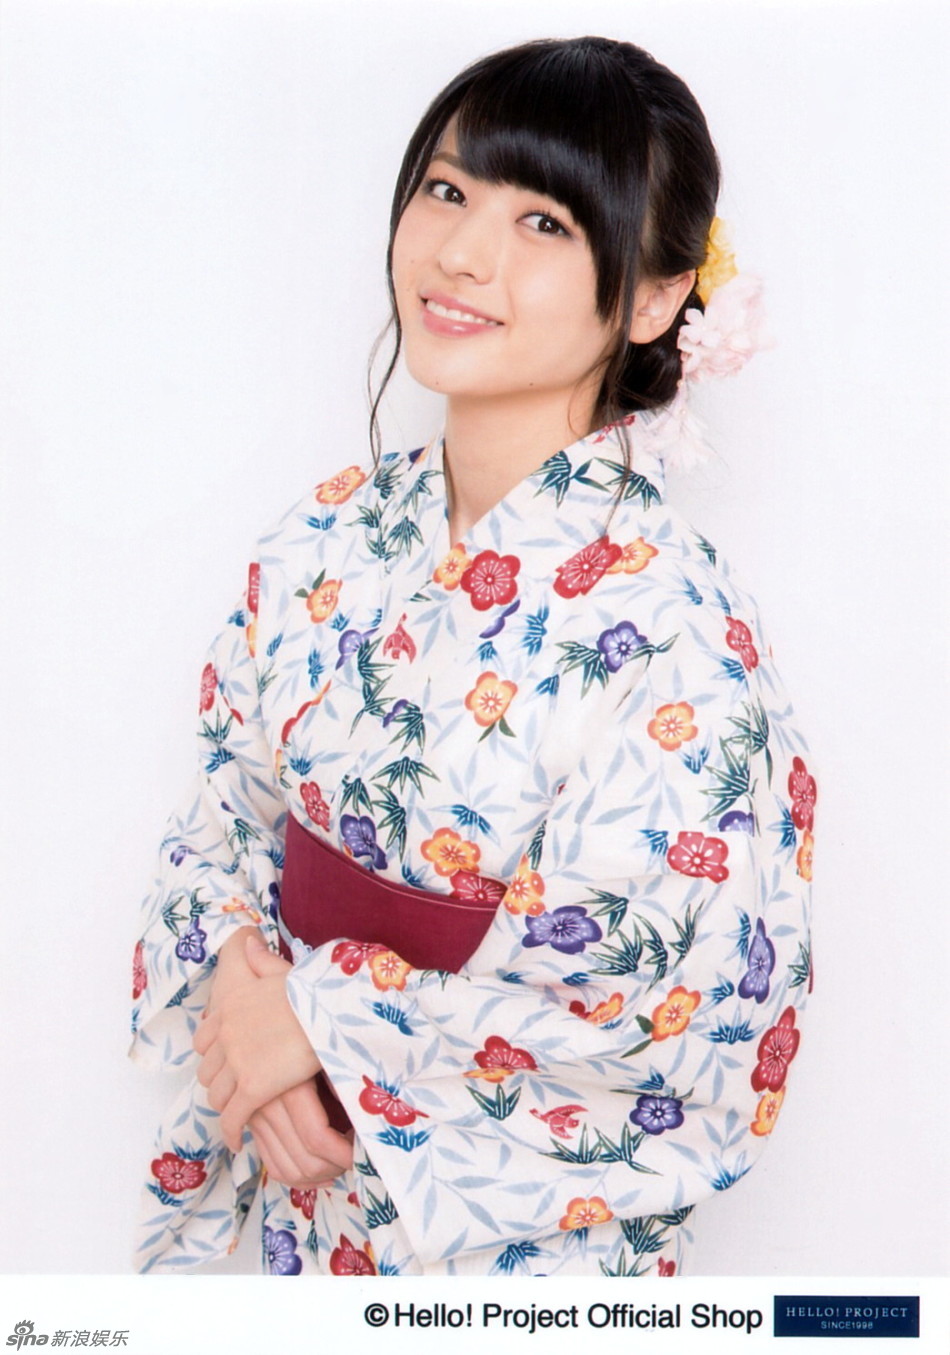 日本女团成员矢岛舞美和服写真 端庄优雅